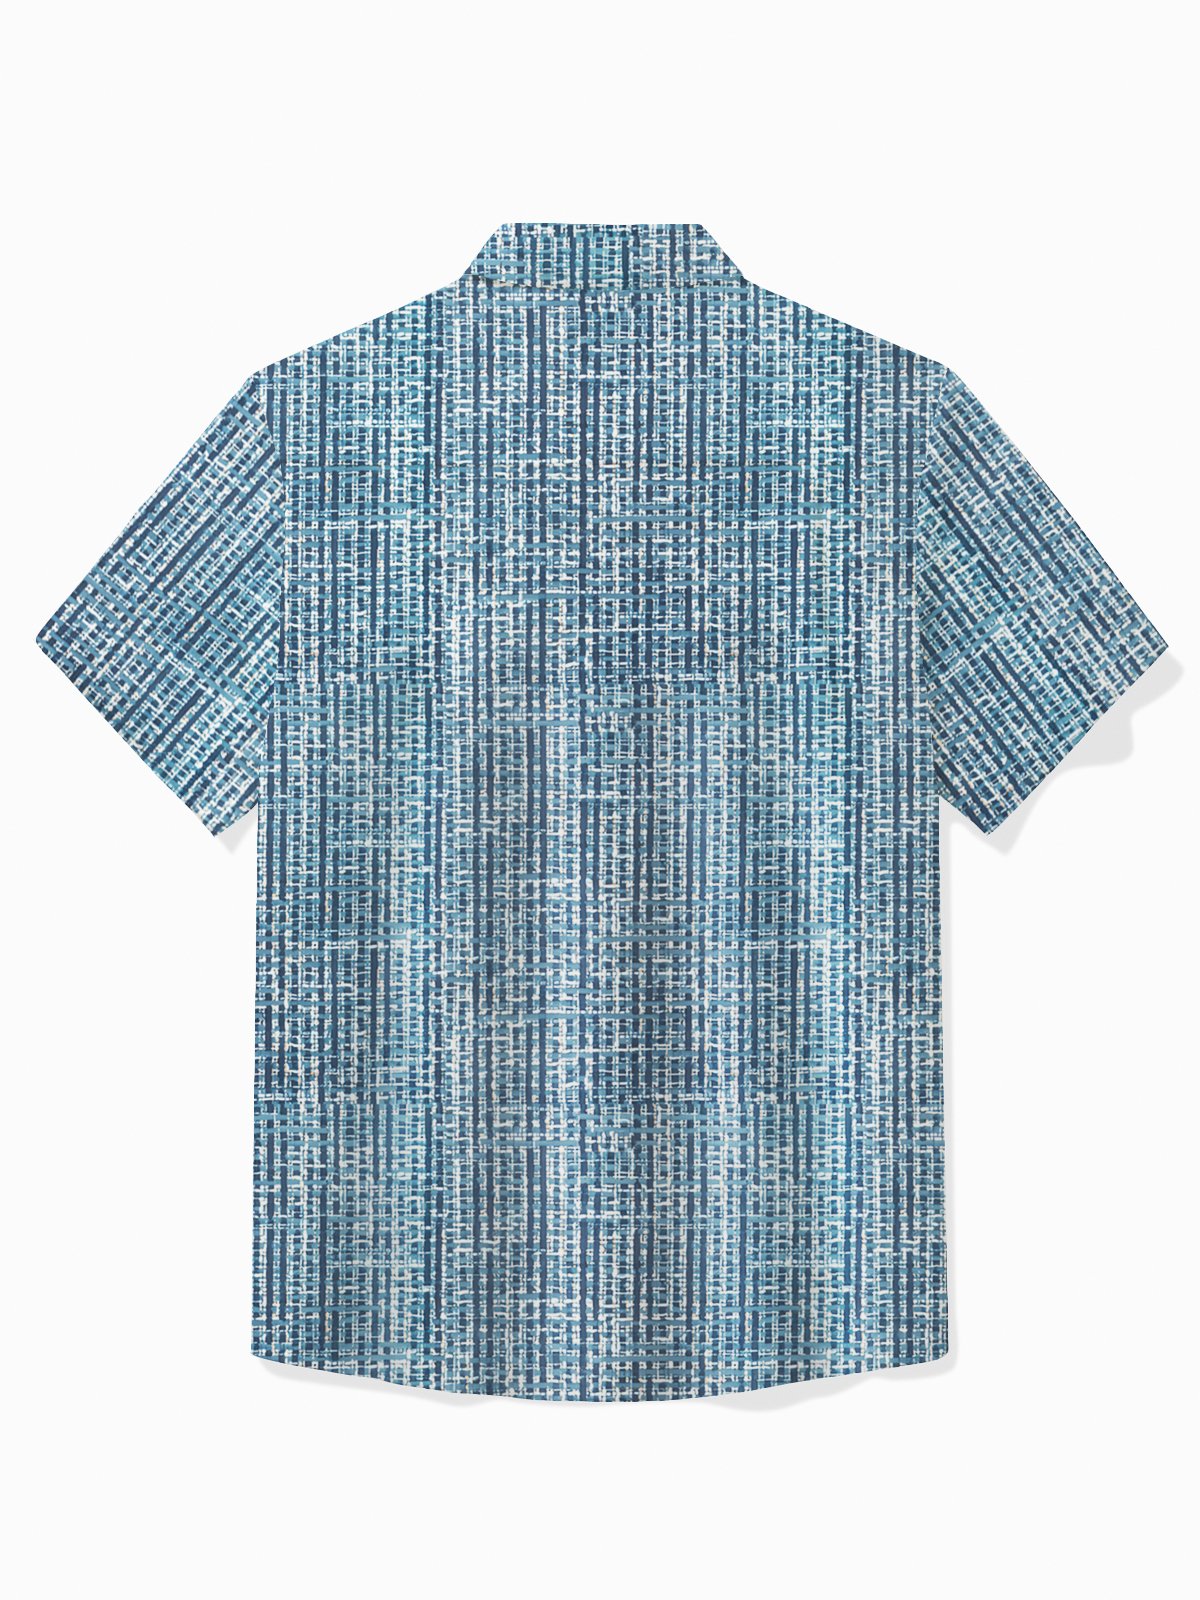 Royaura® Vintage Men's Hawaiian Shirt Abstract Textured Print Pocket Camping Shirt